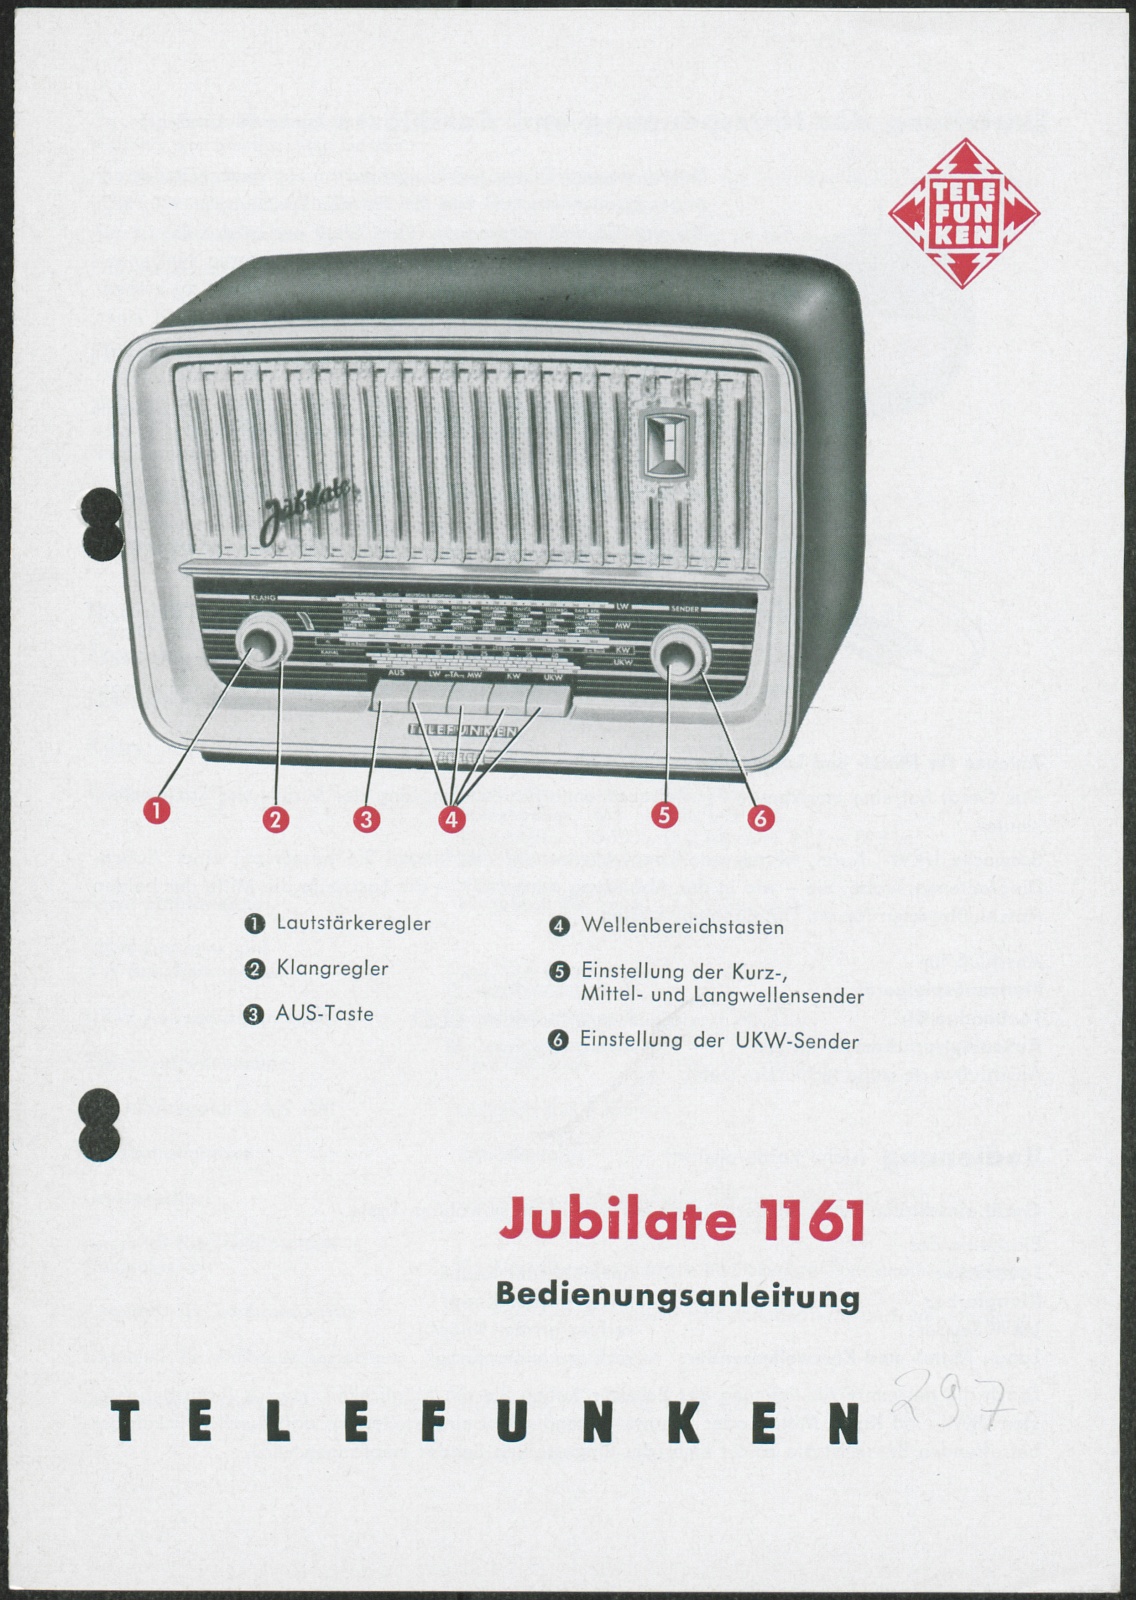 Bedienungsanleitung: Telefunken Jubilate 1161 Bedienungsanleitung (Stiftung Deutsches Technikmuseum Berlin CC0)